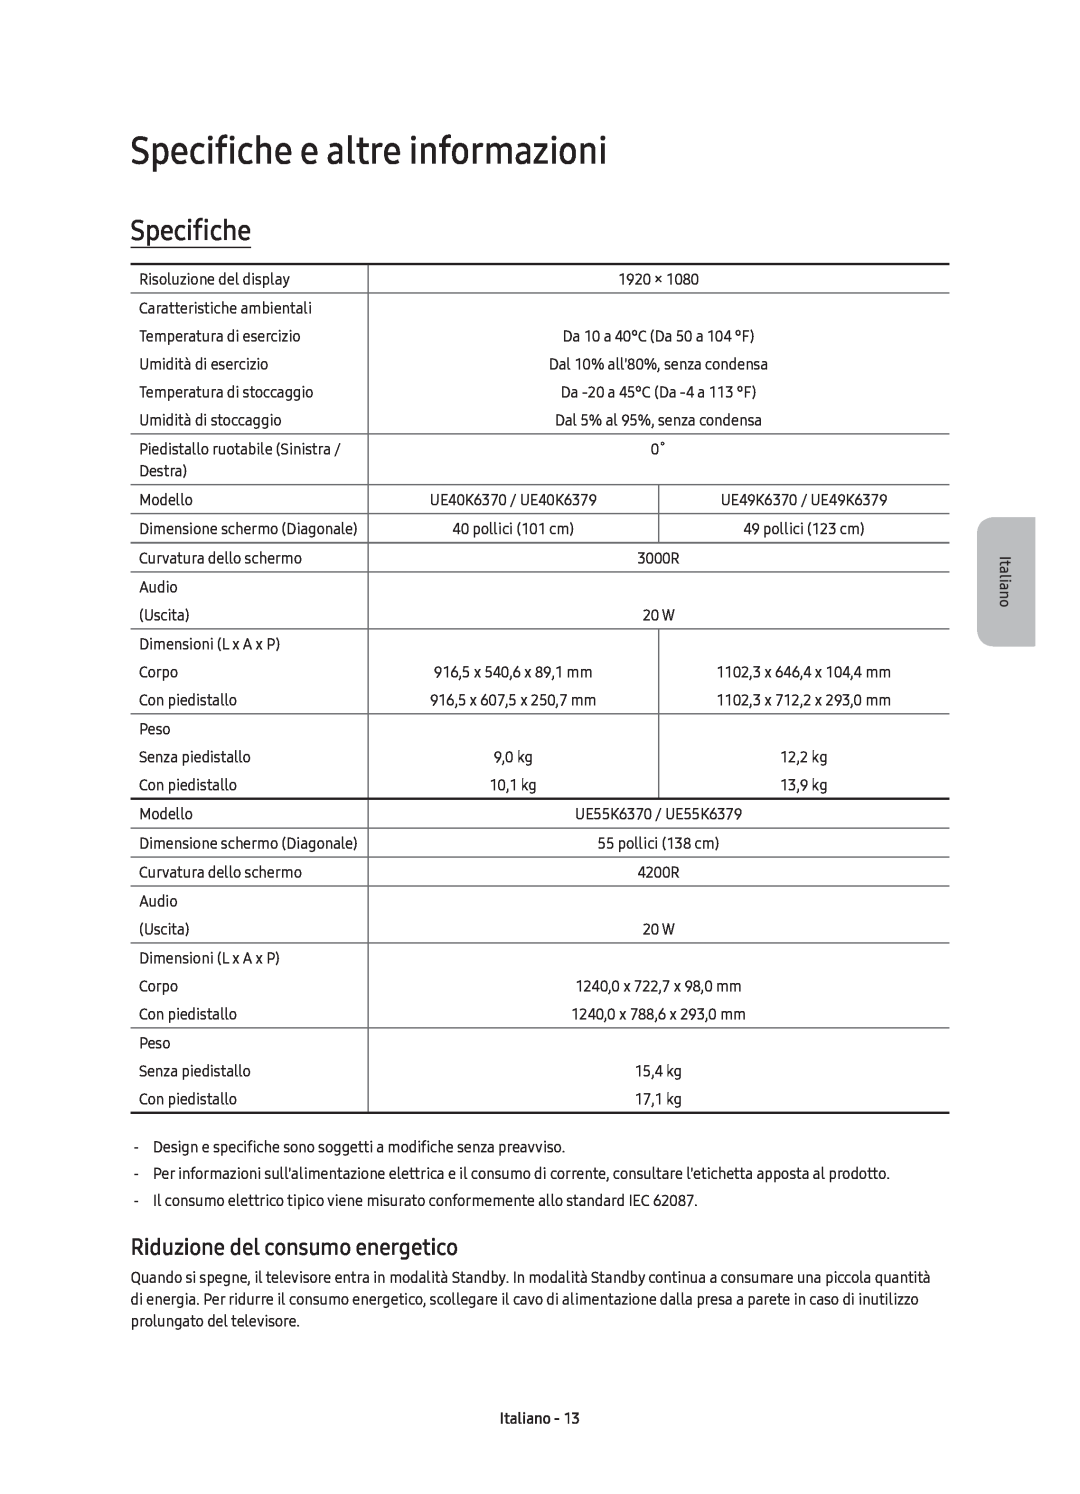 Samsung UE55K6370SUXZG, UE40K6379SUXZG manual Specifiche e altre informazioni, Riduzione del consumo energetico, Italiano 